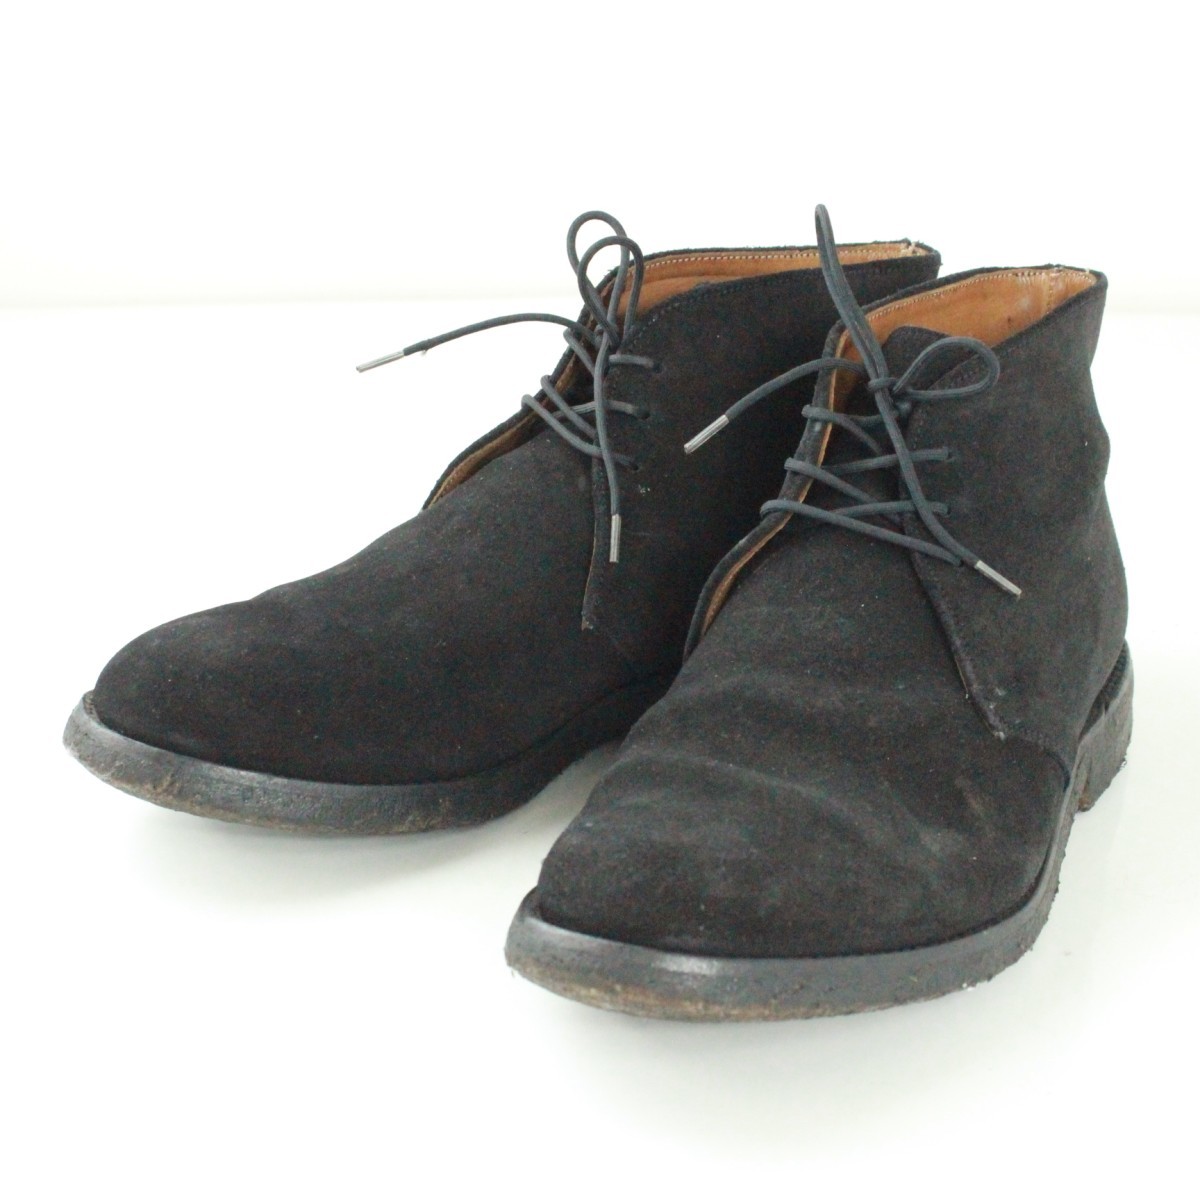 REGAL BRITISH COLLECTION リーガル ブリティッシュコレクション スエード チャッカブーツ 革靴 表記サイズ6